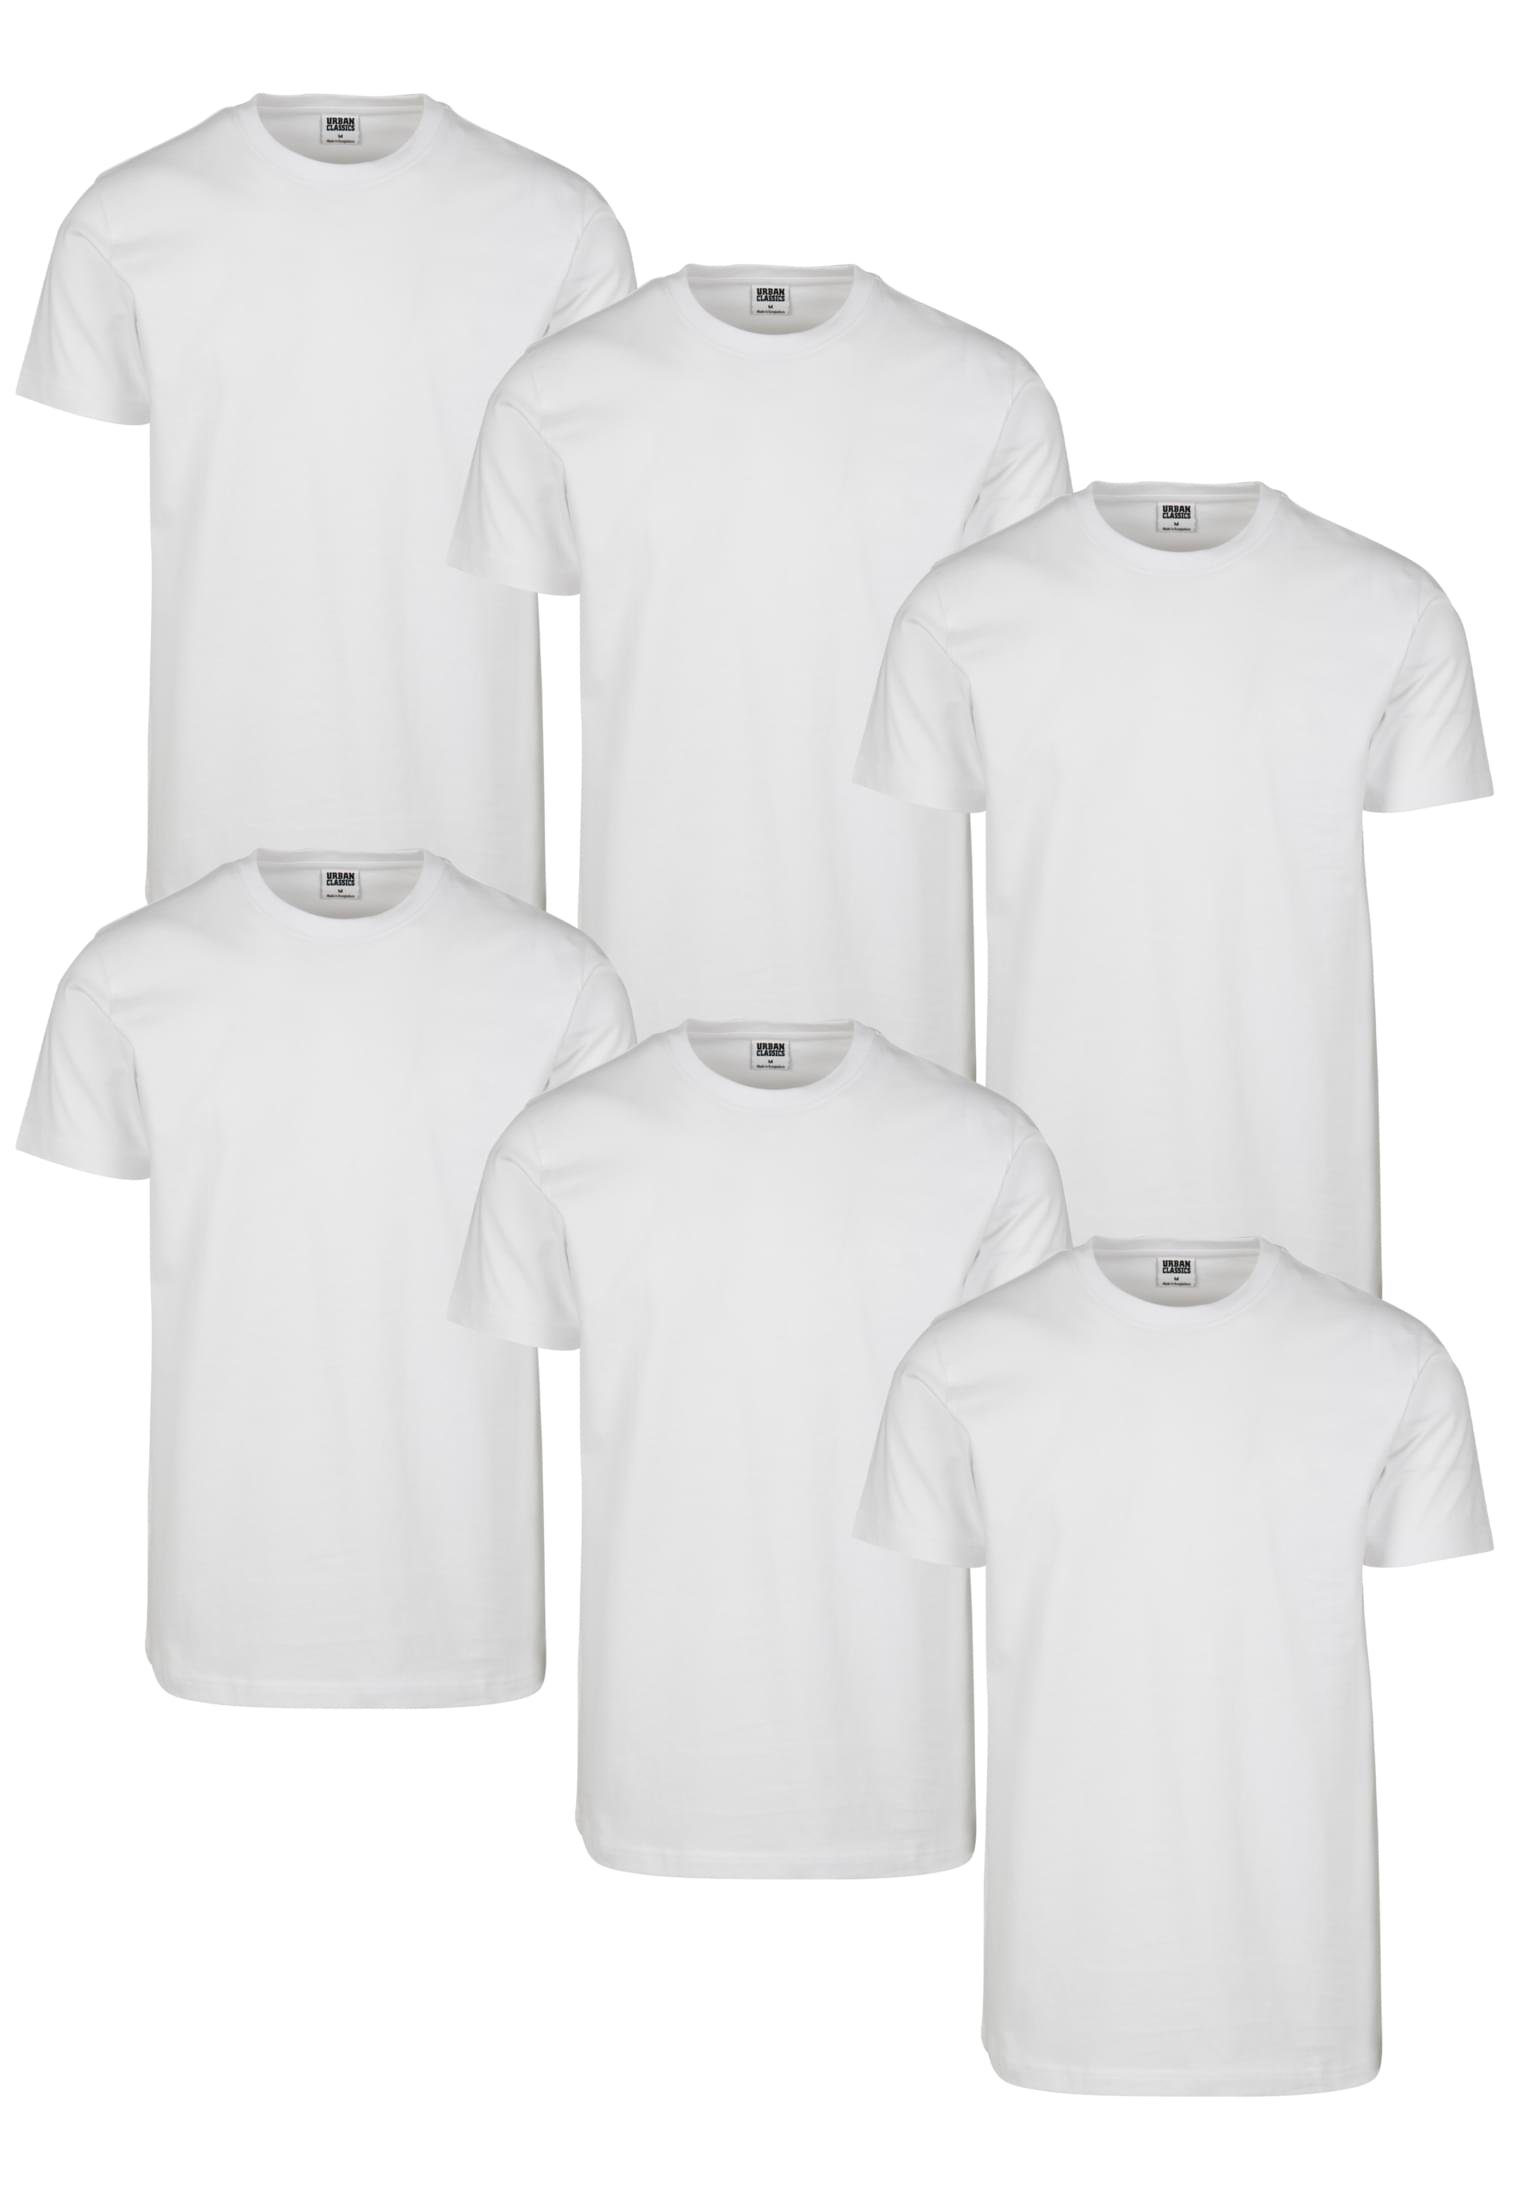 Tee URBAN (1-tlg) CLASSICS blk/blk/wht/rdwn/bttlgrn/nvy Herren 6-Pack T-Shirt Basic